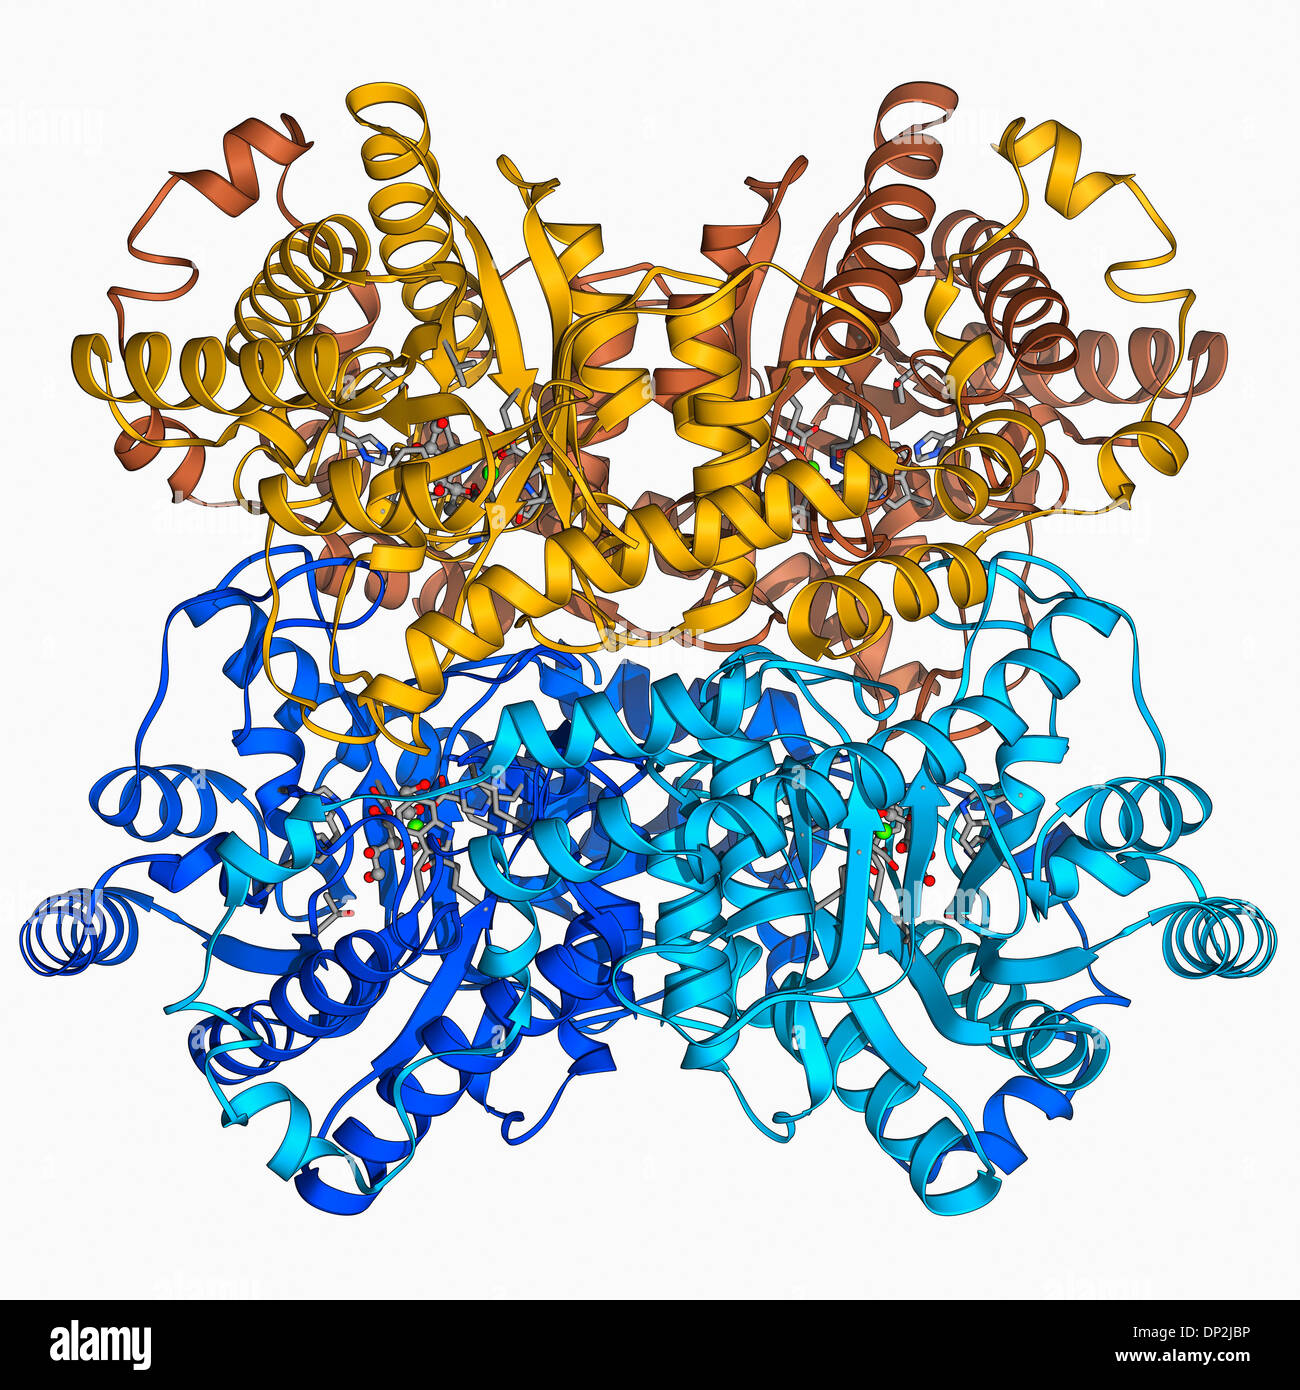 Xilosa complejo isomerase Foto de stock